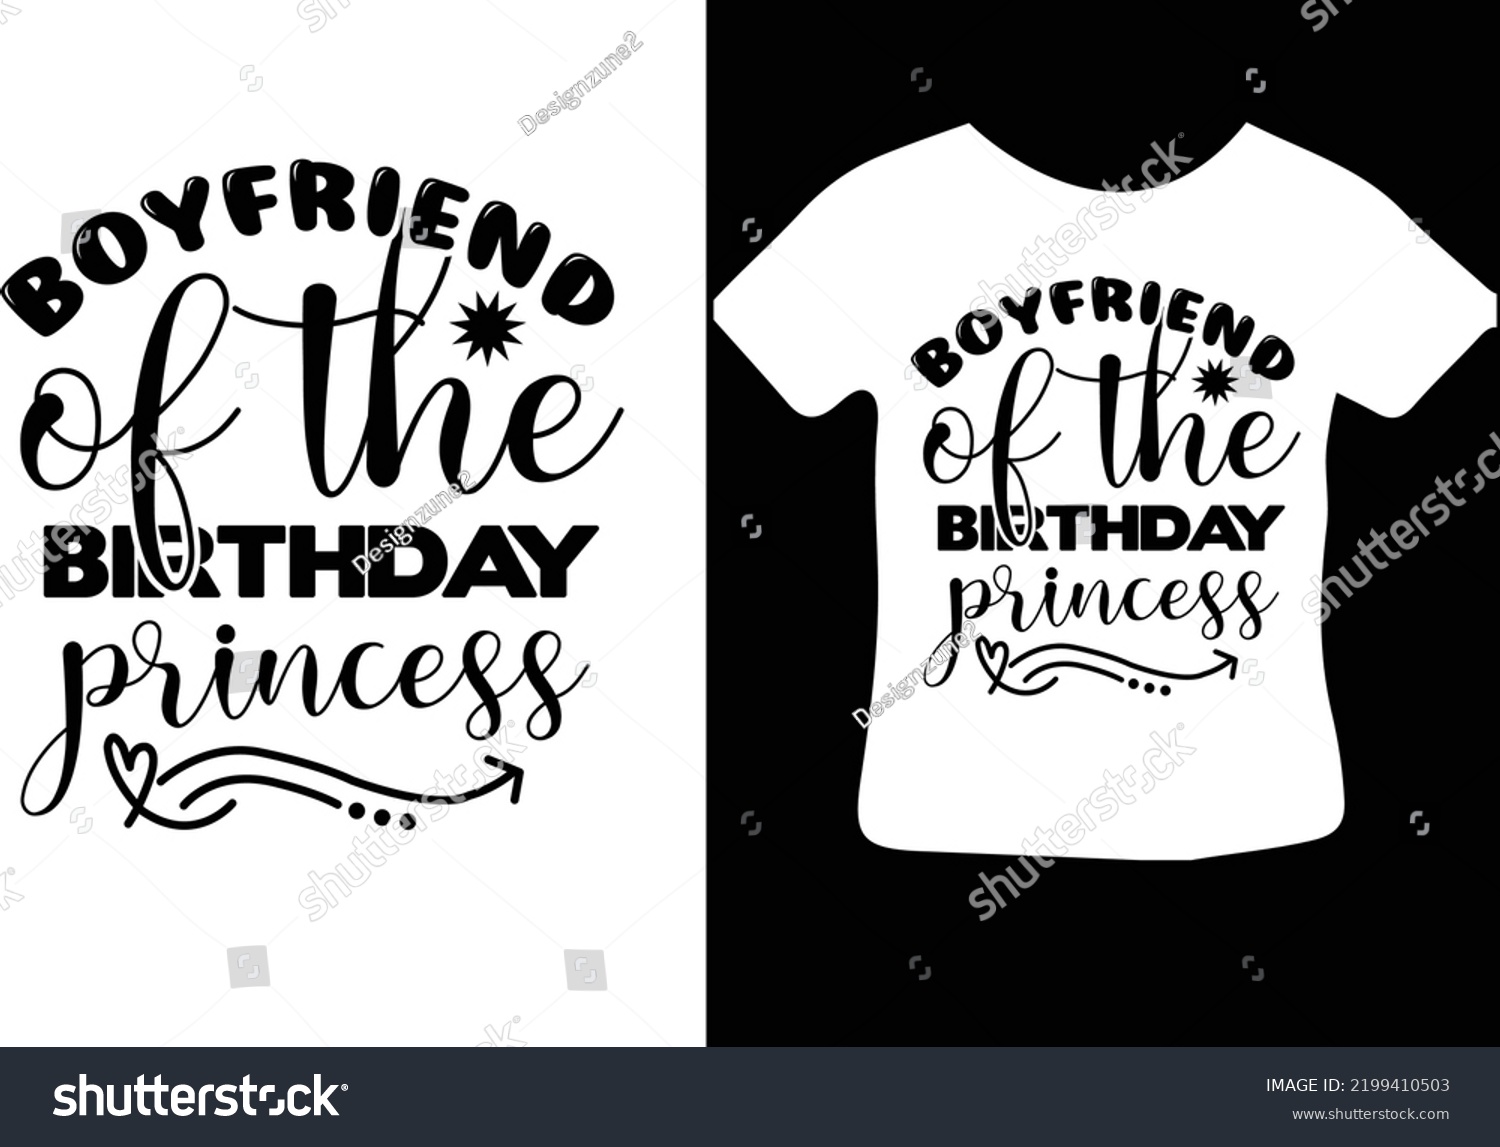 SVG of Boyfriend of the Birthday princess svg design svg